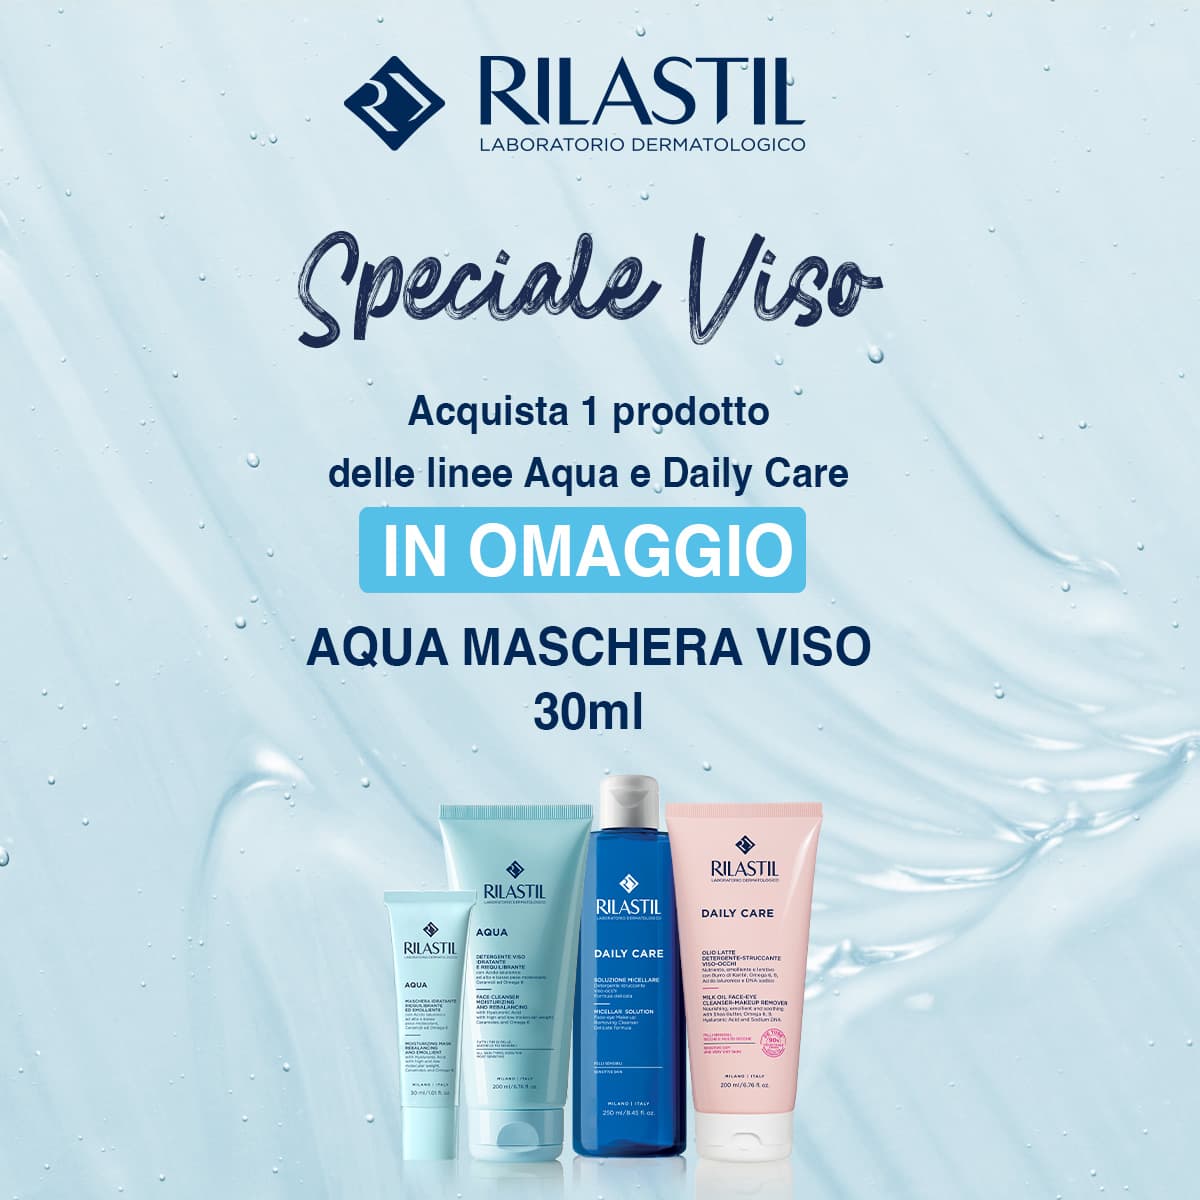 banner promozionale rilastil aqua e daily care: acquista 1 prodotto, ricevi in omaggio aqua maschera viso 30ml mobile